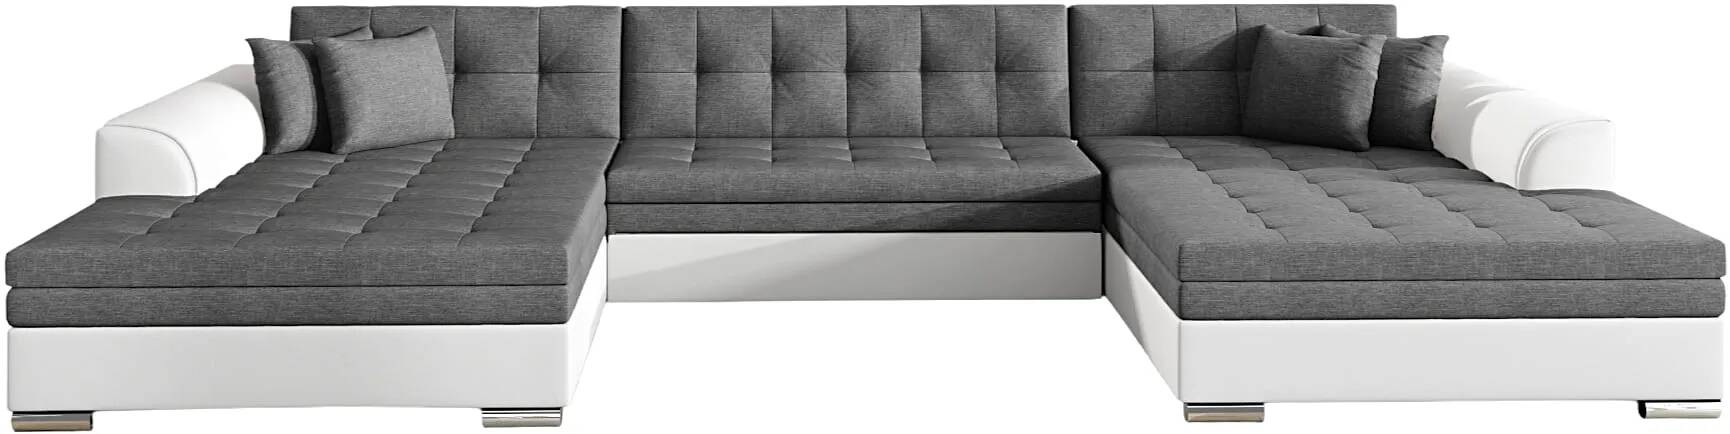 Canapé d'angle convertible en tissu gris et simili cuir blanc